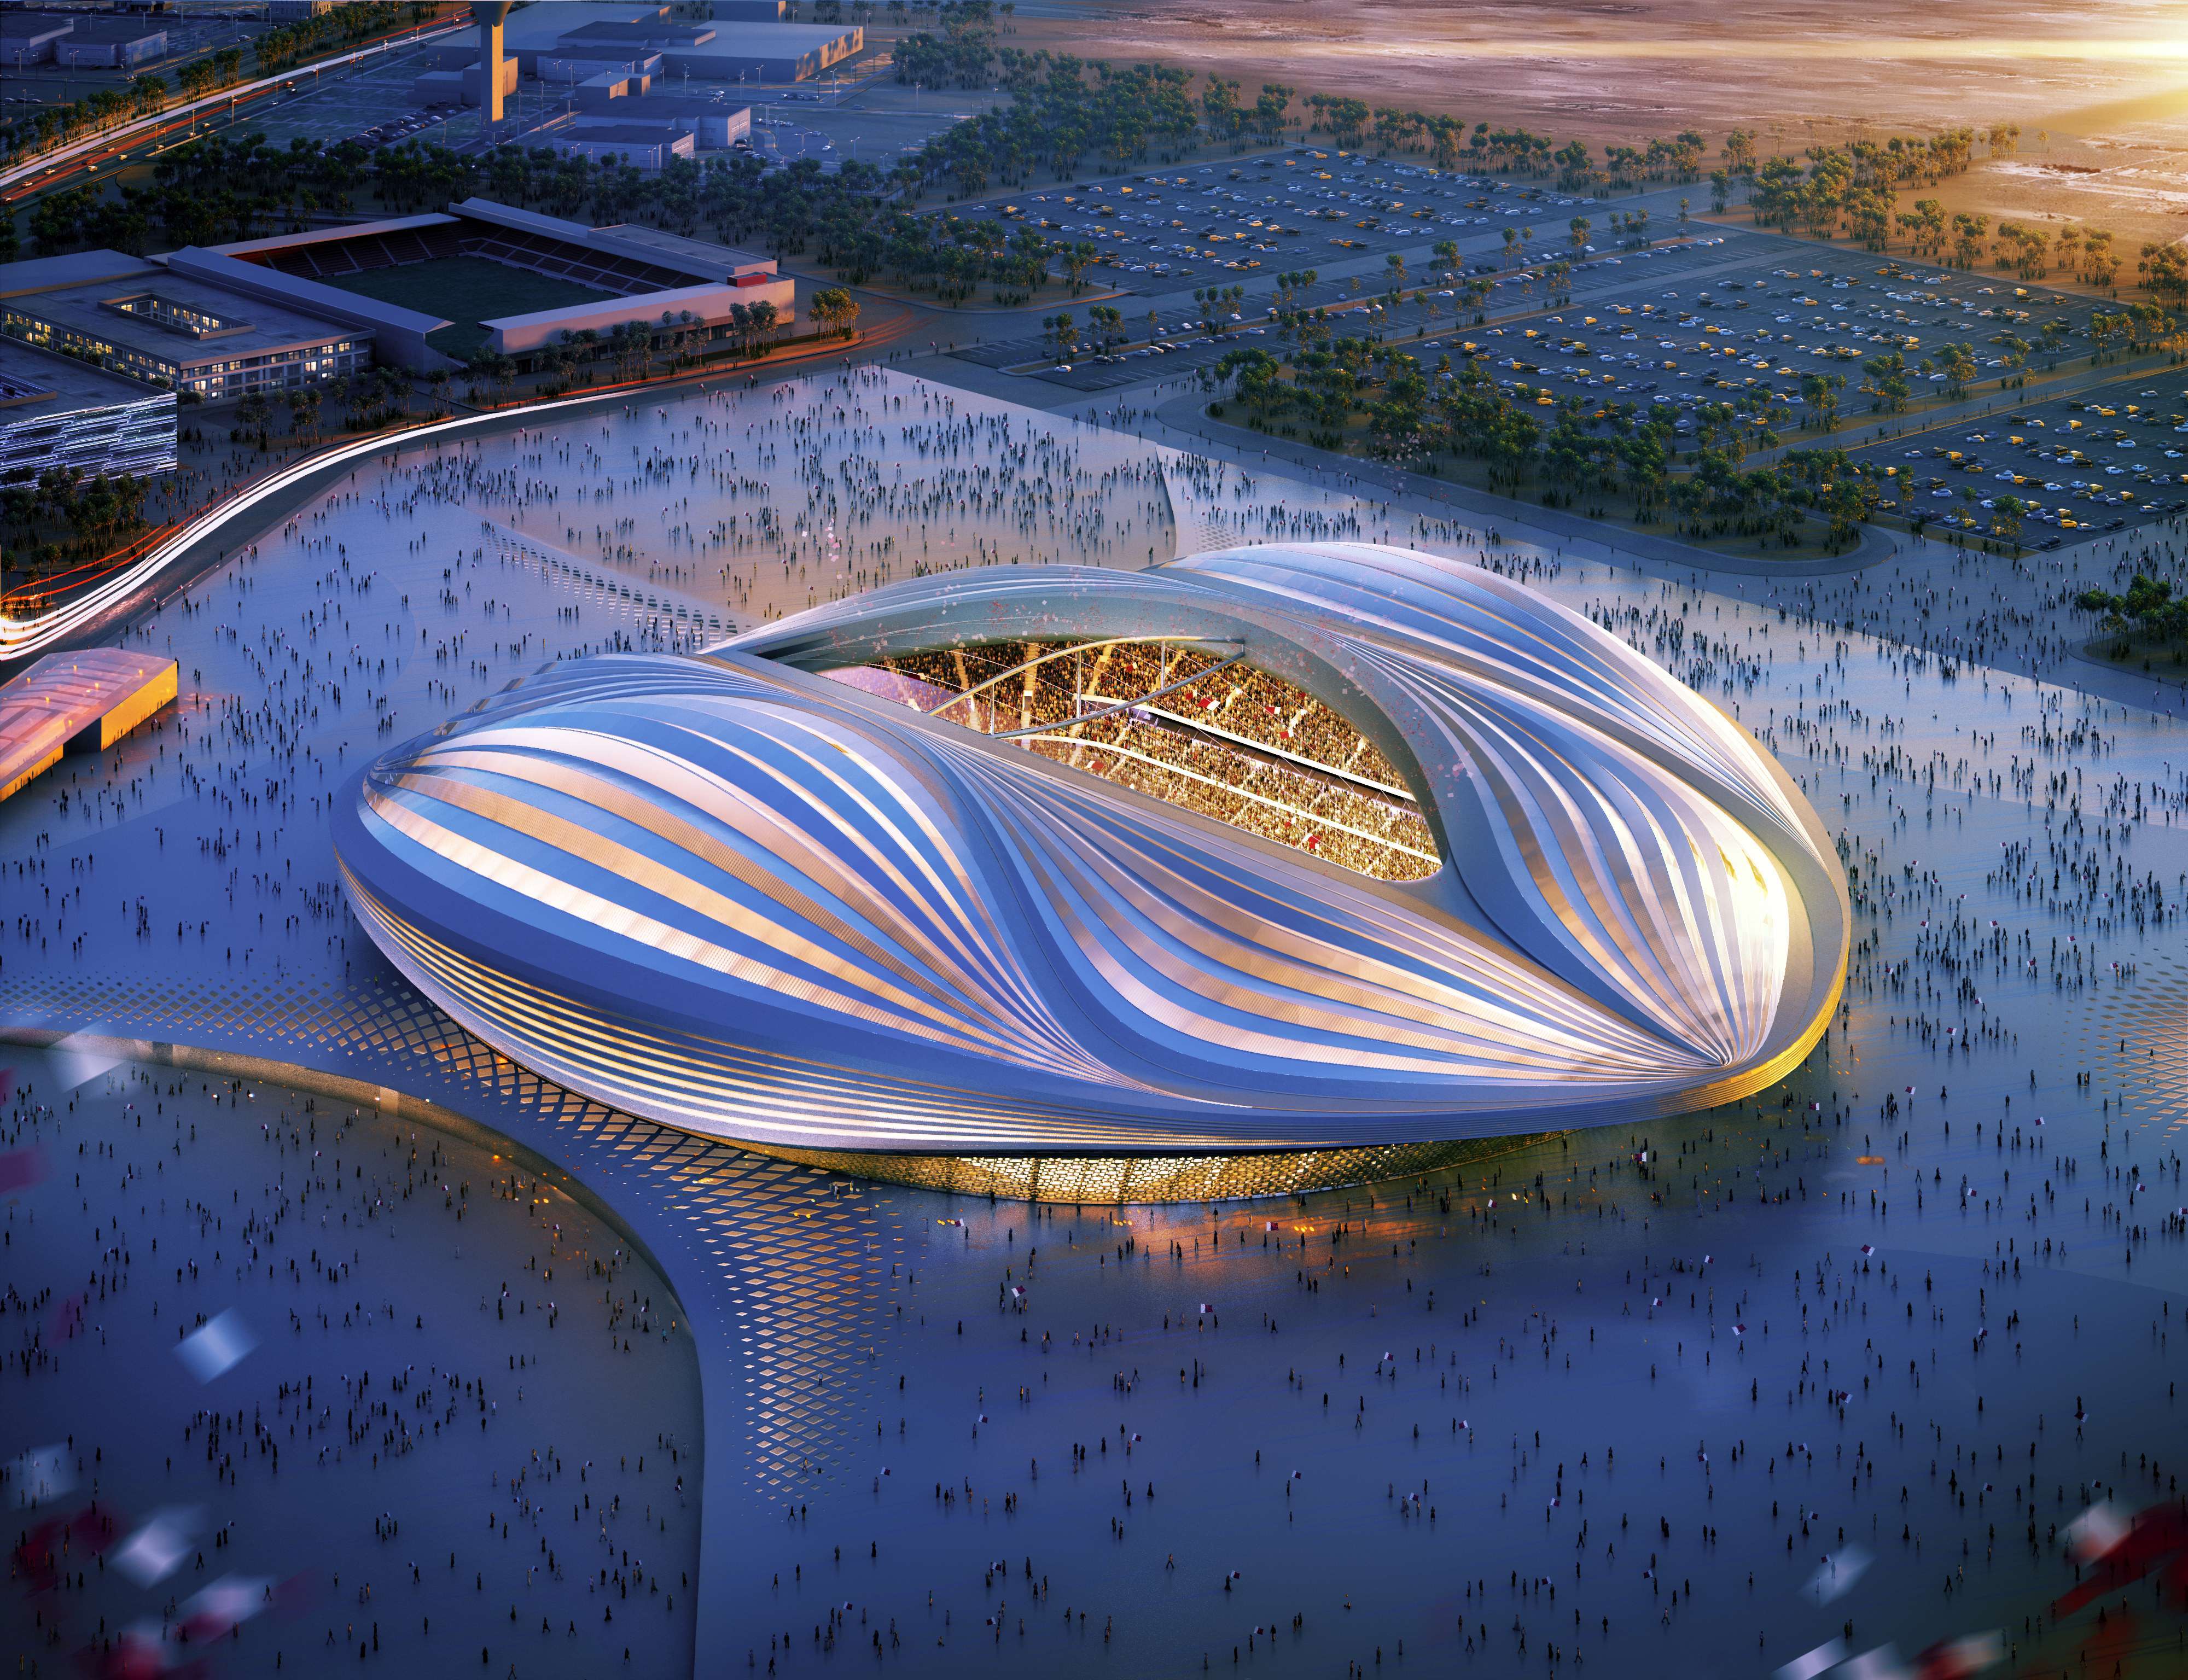 World stadiums. Стадион в Катаре Заха Хадид. Футбольный стадион 2022, Катар. Футбольный стадион 2022 Катар Заха Хадид.